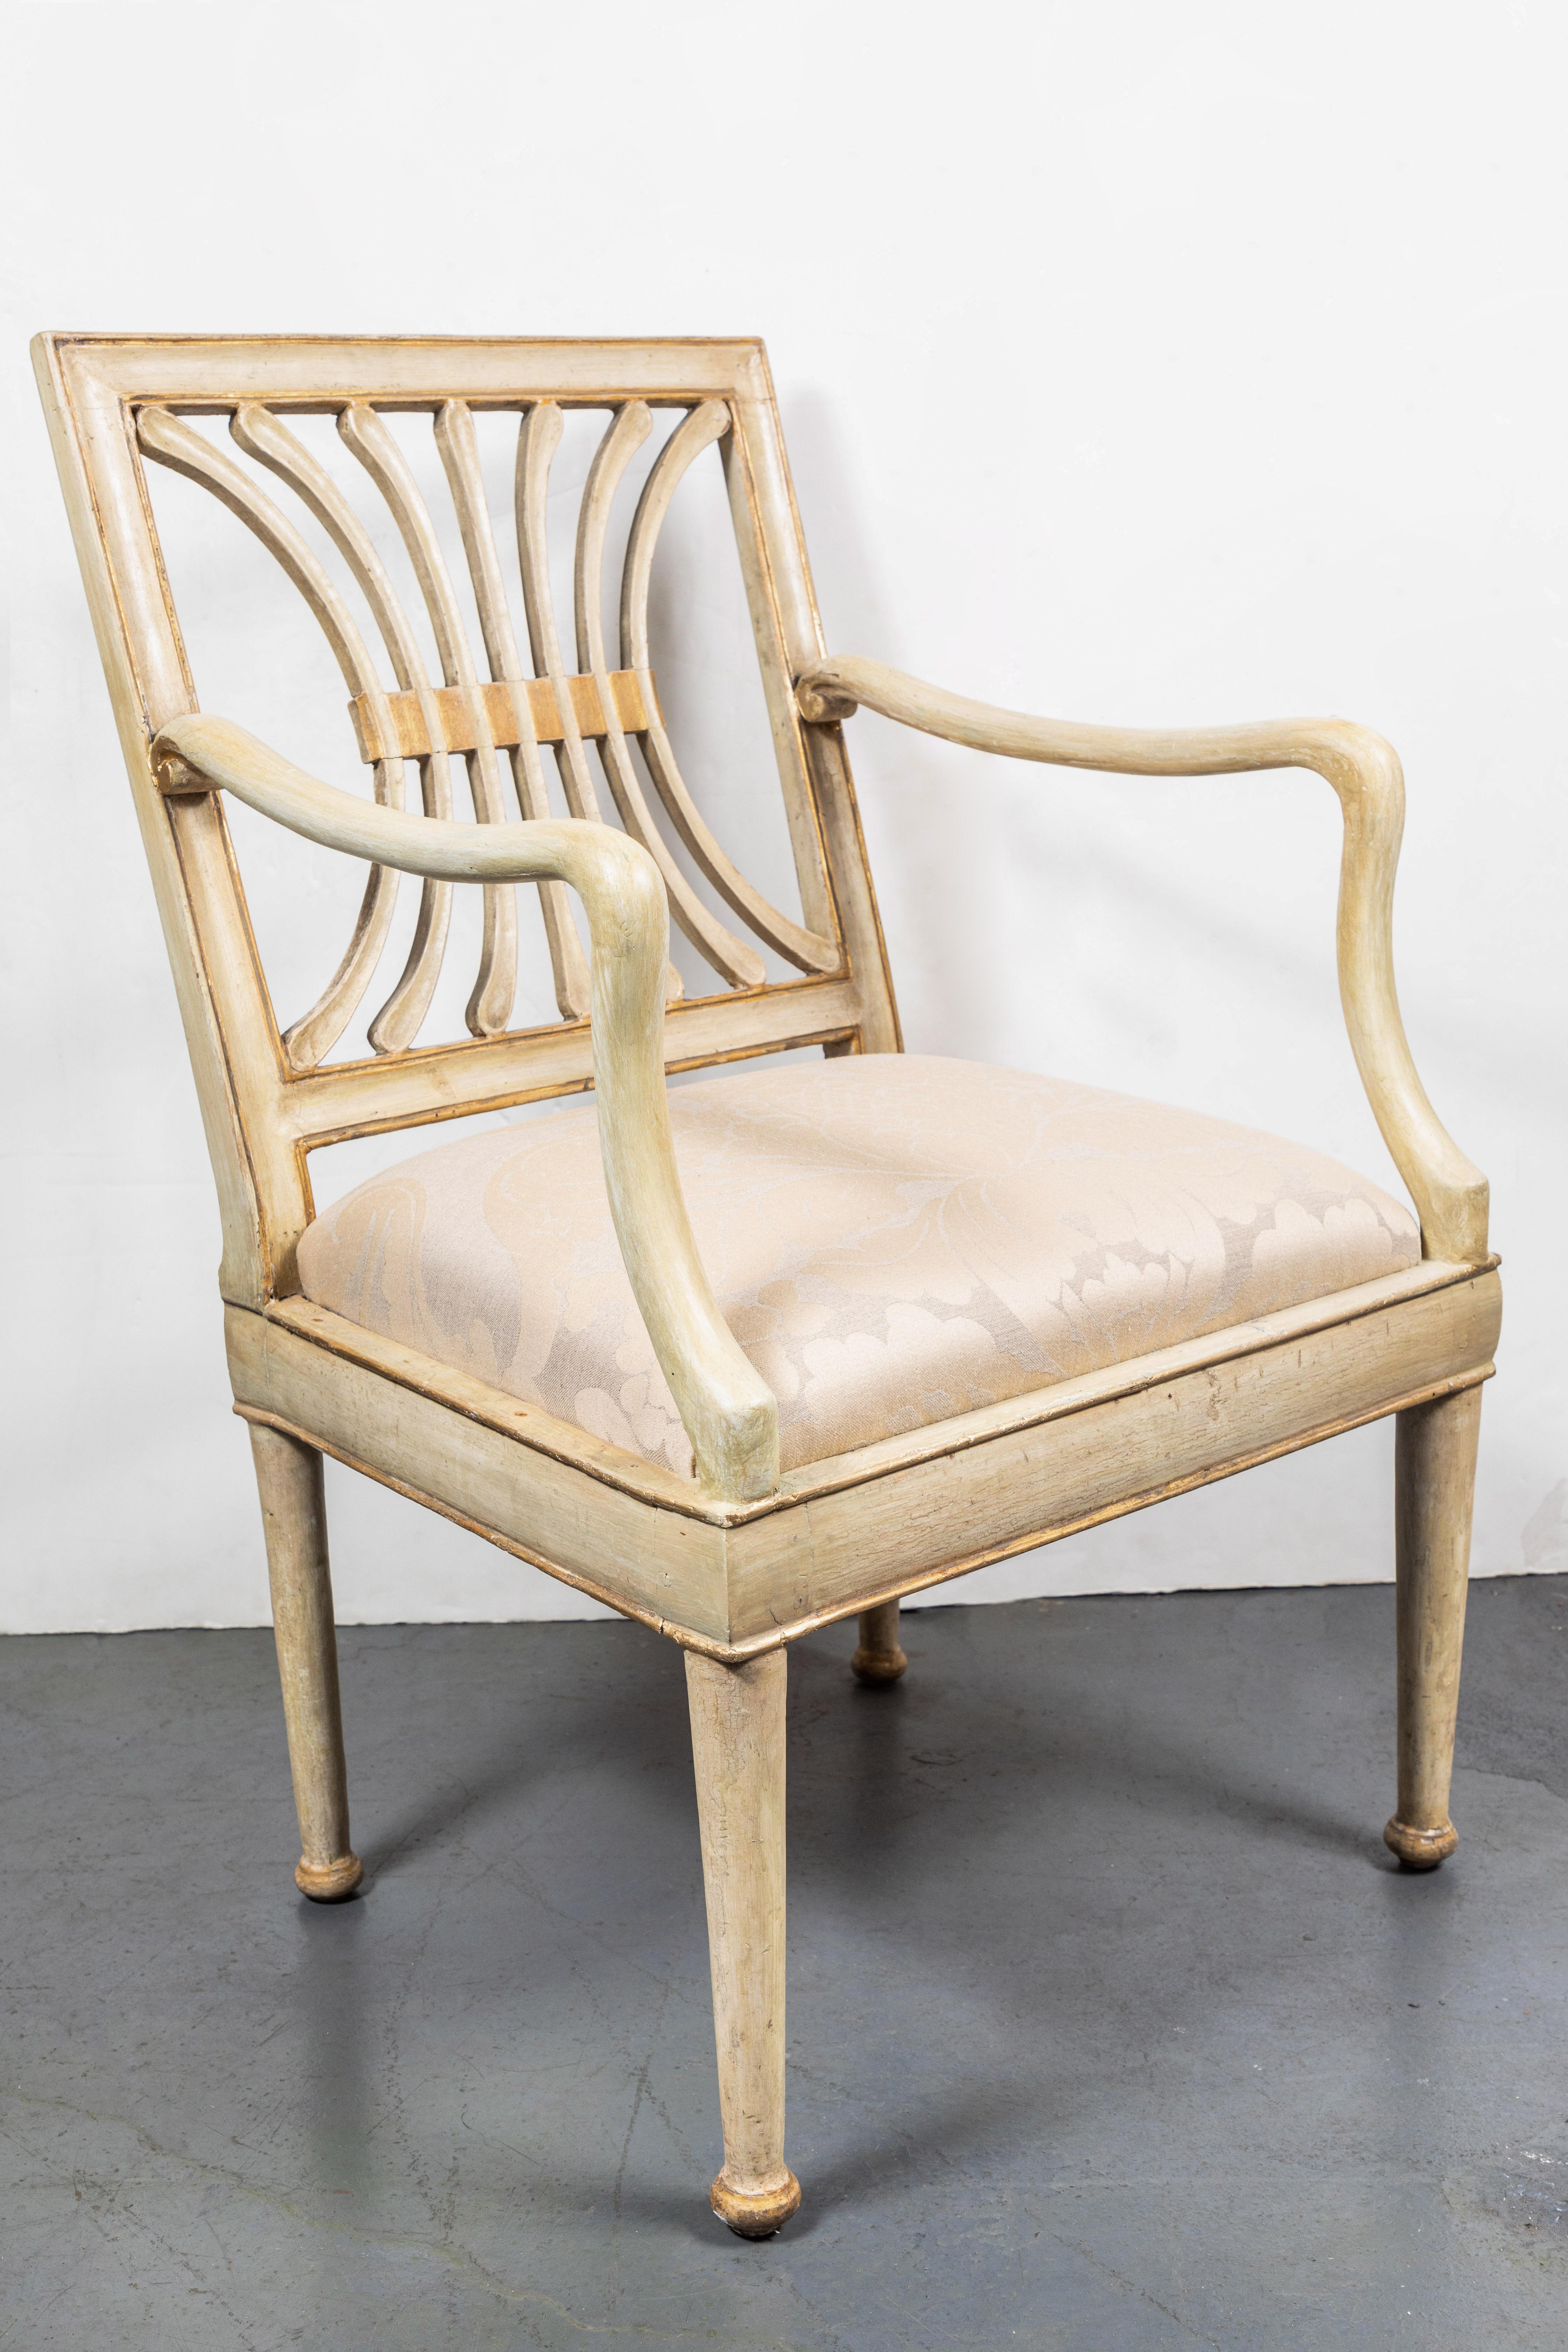 Sechs handgeschnitzte, bemalte und paketvergoldete italienische Stühle aus der Jahrhundertwende in creme. Die durchbrochene, skulpturale Rückenplatte und die geschwungenen Arme über den konisch zulaufenden Beinen. Erworben aus einem Privatbesitz in